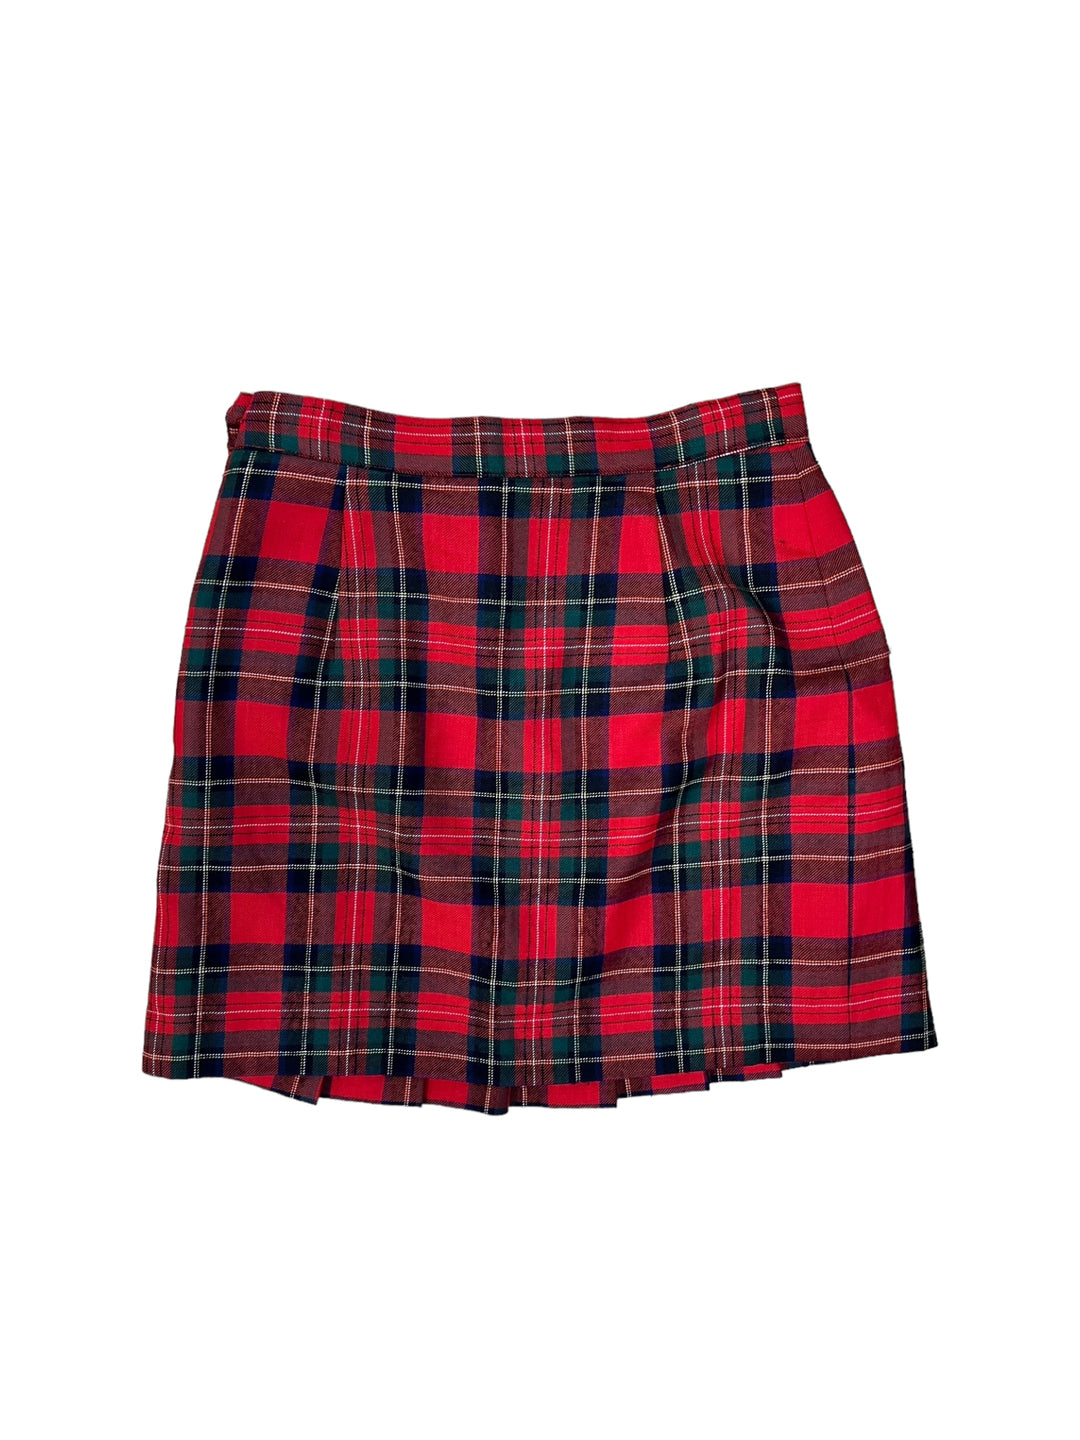 Vintage tartan plaid mini skirt large(44)